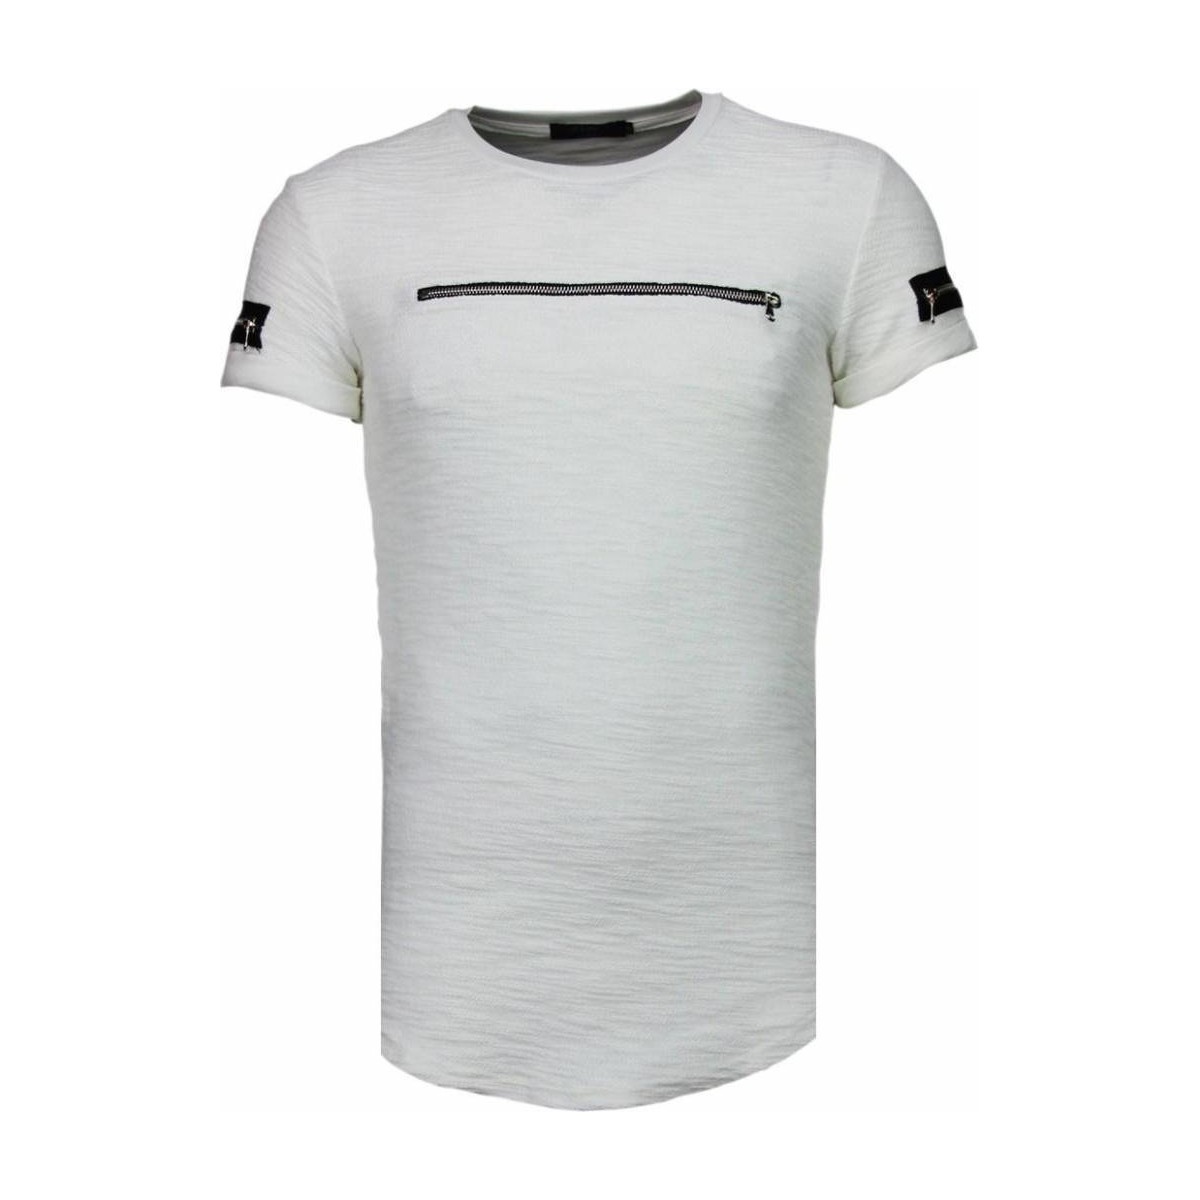 textil Herre T-shirts m. korte ærmer Justing 31875188 Hvid